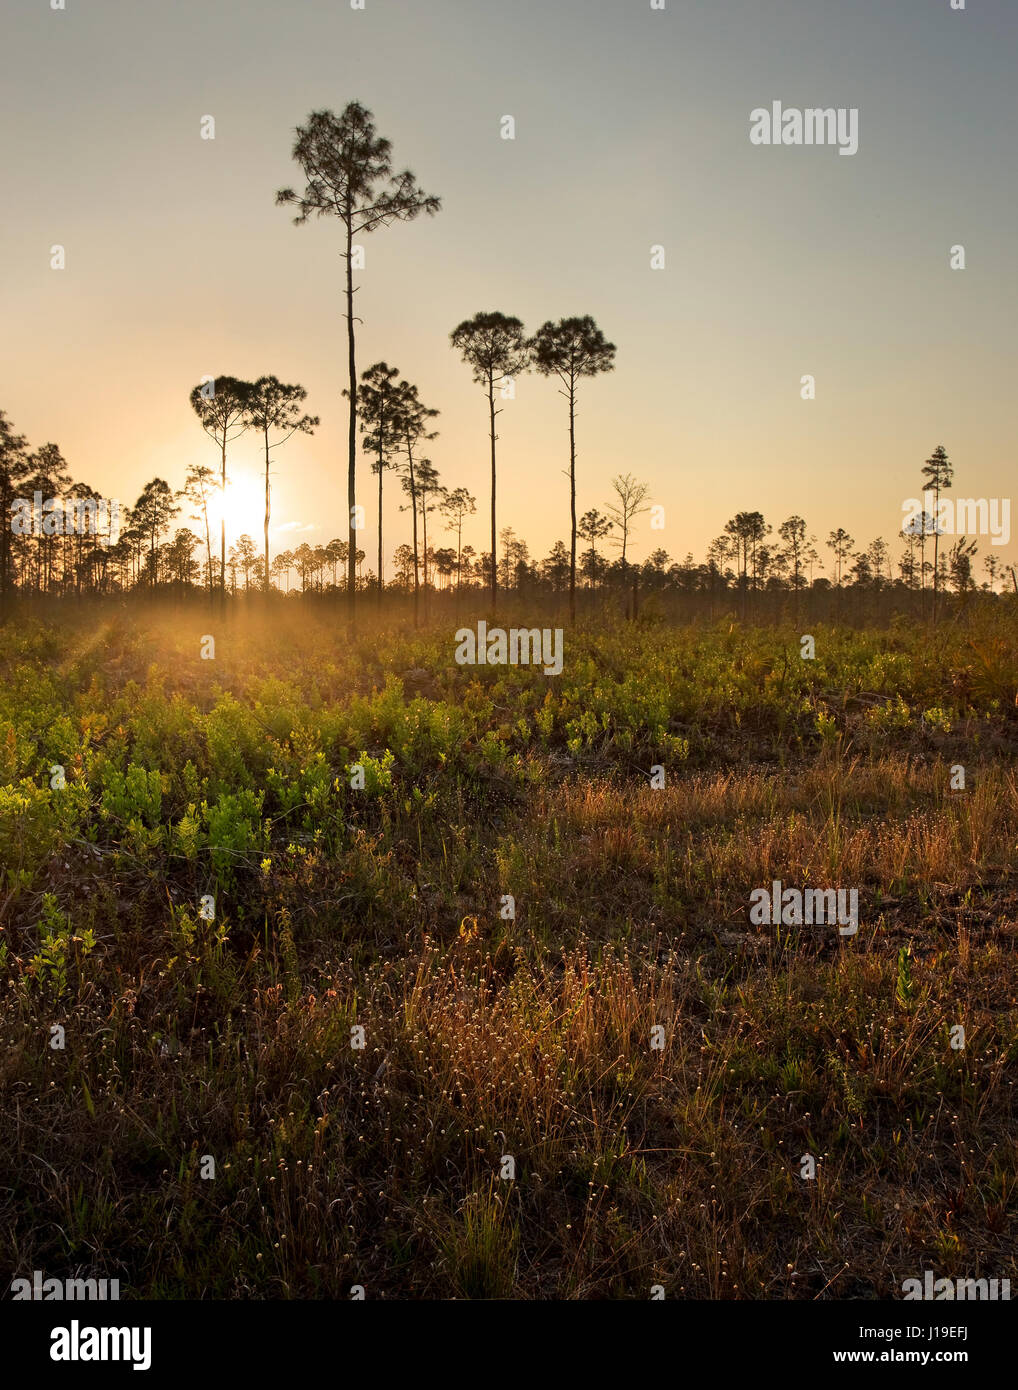 Coucher du soleil illumine le maquis dans un pin du sud de la Floride, dans l'habitat rockland Picayune Strand State Forest, près de Parc National des Everglades. Banque D'Images